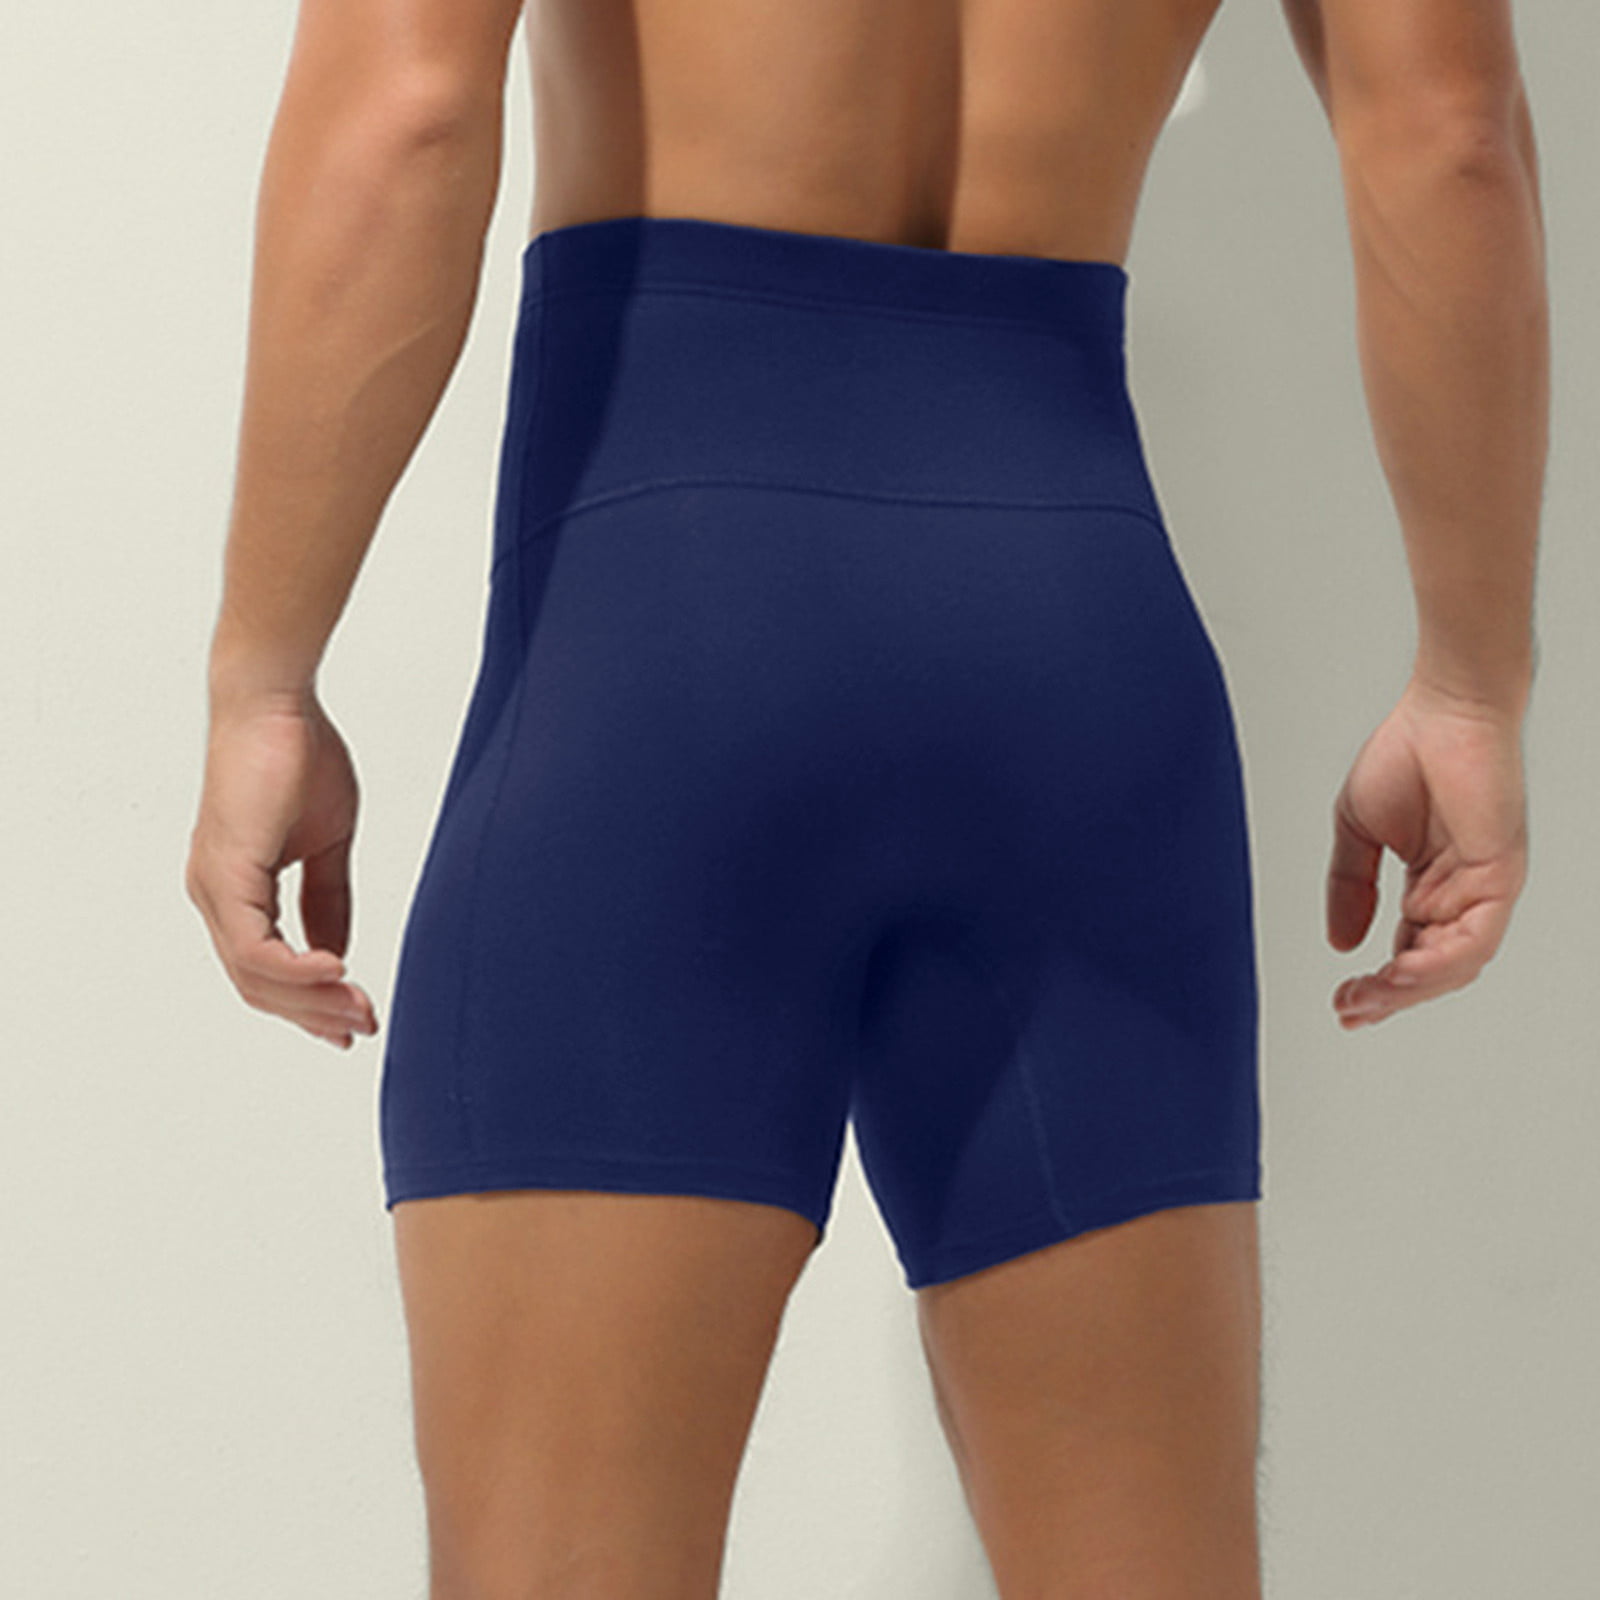 zuwimk Men Underwear Boxer Brief,Men's Cotton Stretch Underwear Support  Briefs Wide Waistband Blue,3XL 